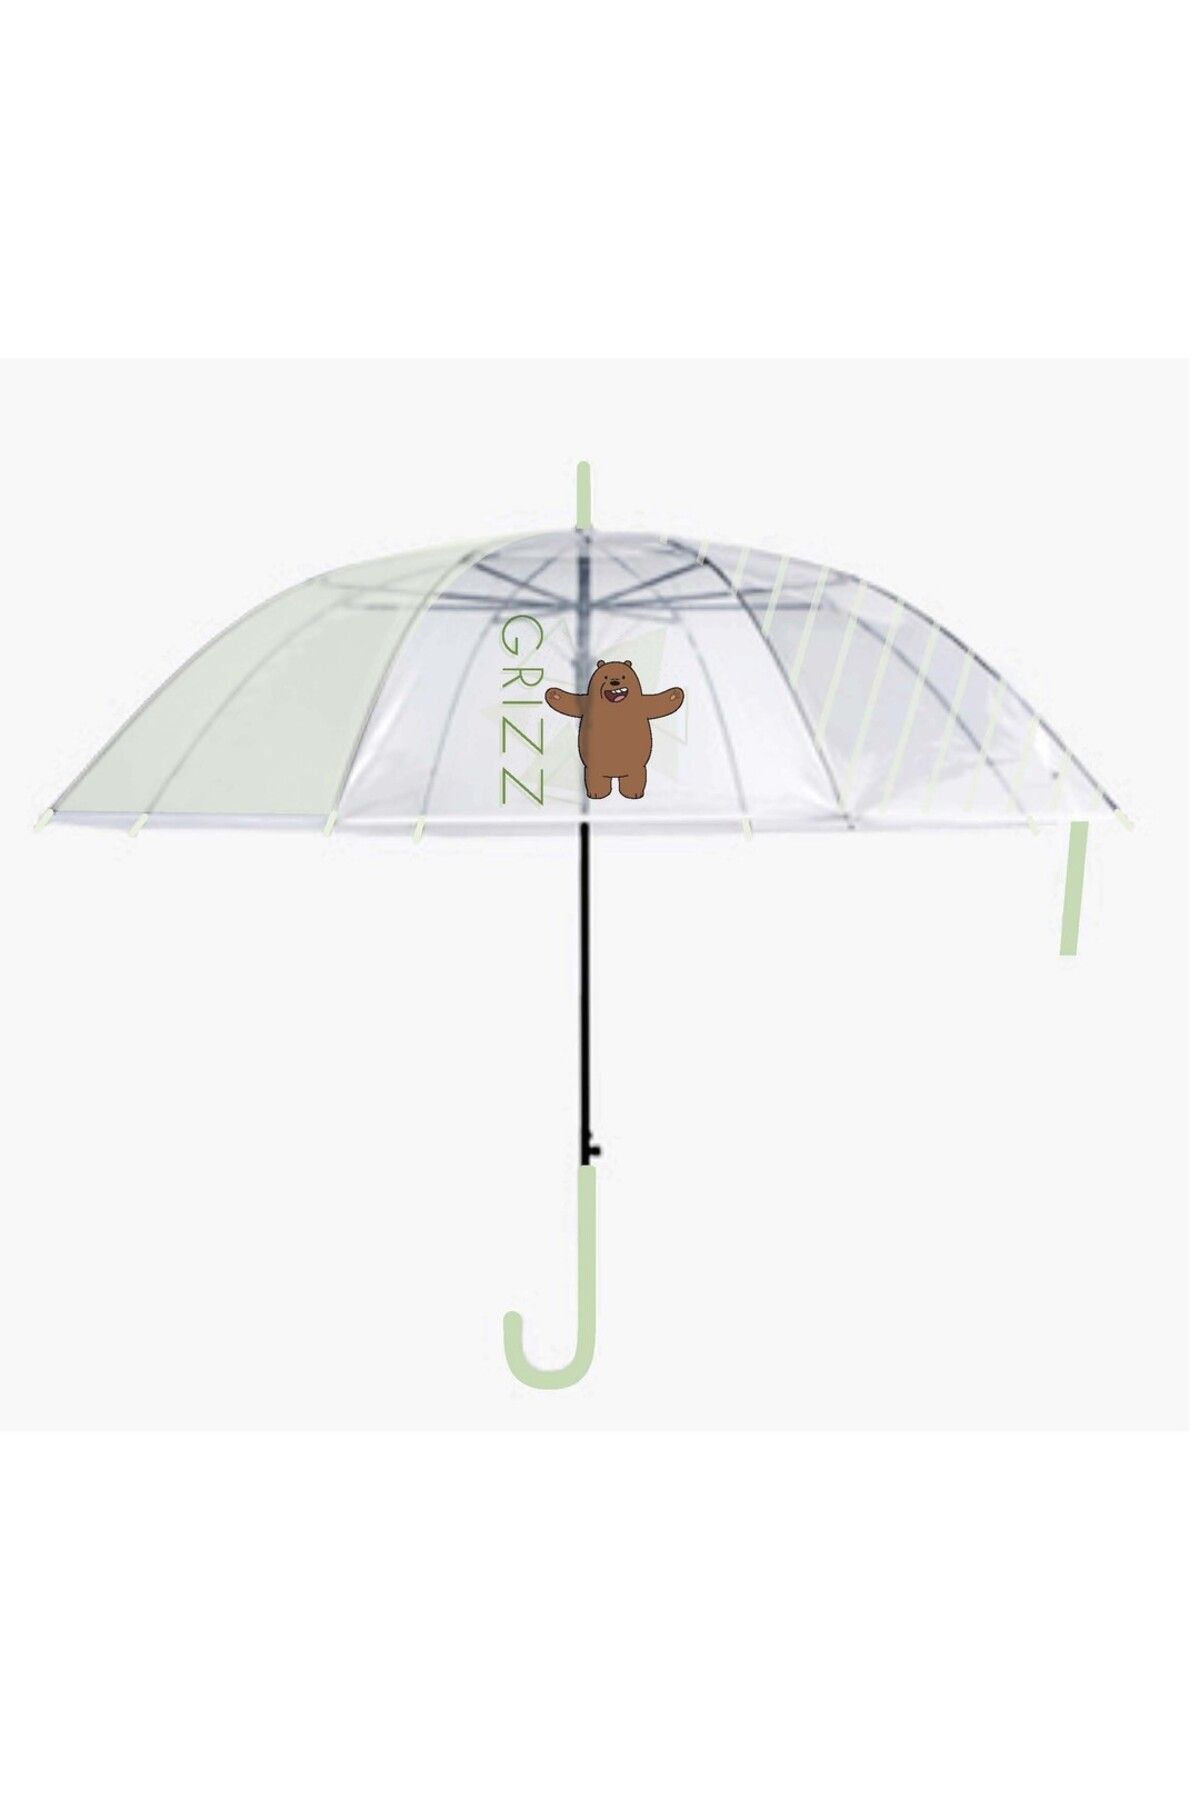 Miniso We Bare Bears Lisanslı Uzun Saplı Transparan Şemsiye - Boz Ayı